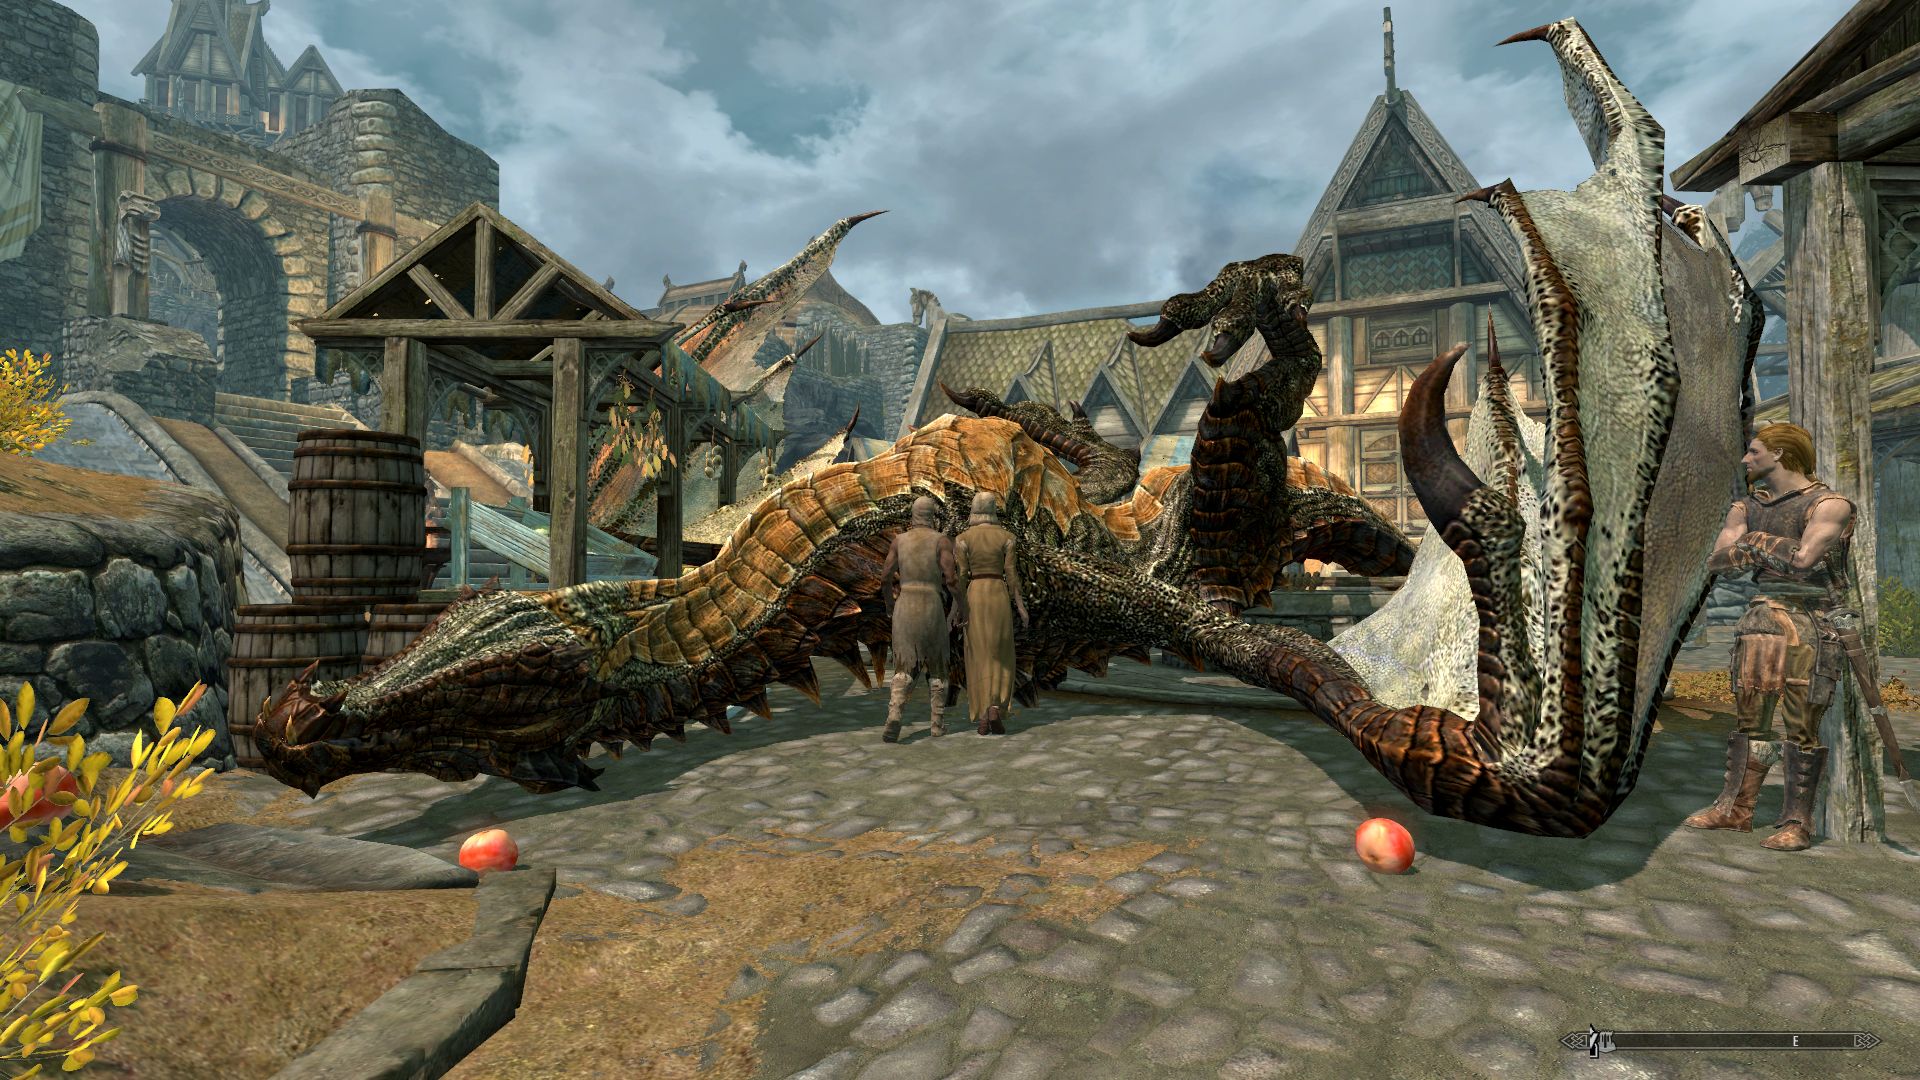 Dragon Stalking Fix バグフィックス Skyrim Special Edition Mod データベース Mod紹介 まとめサイト